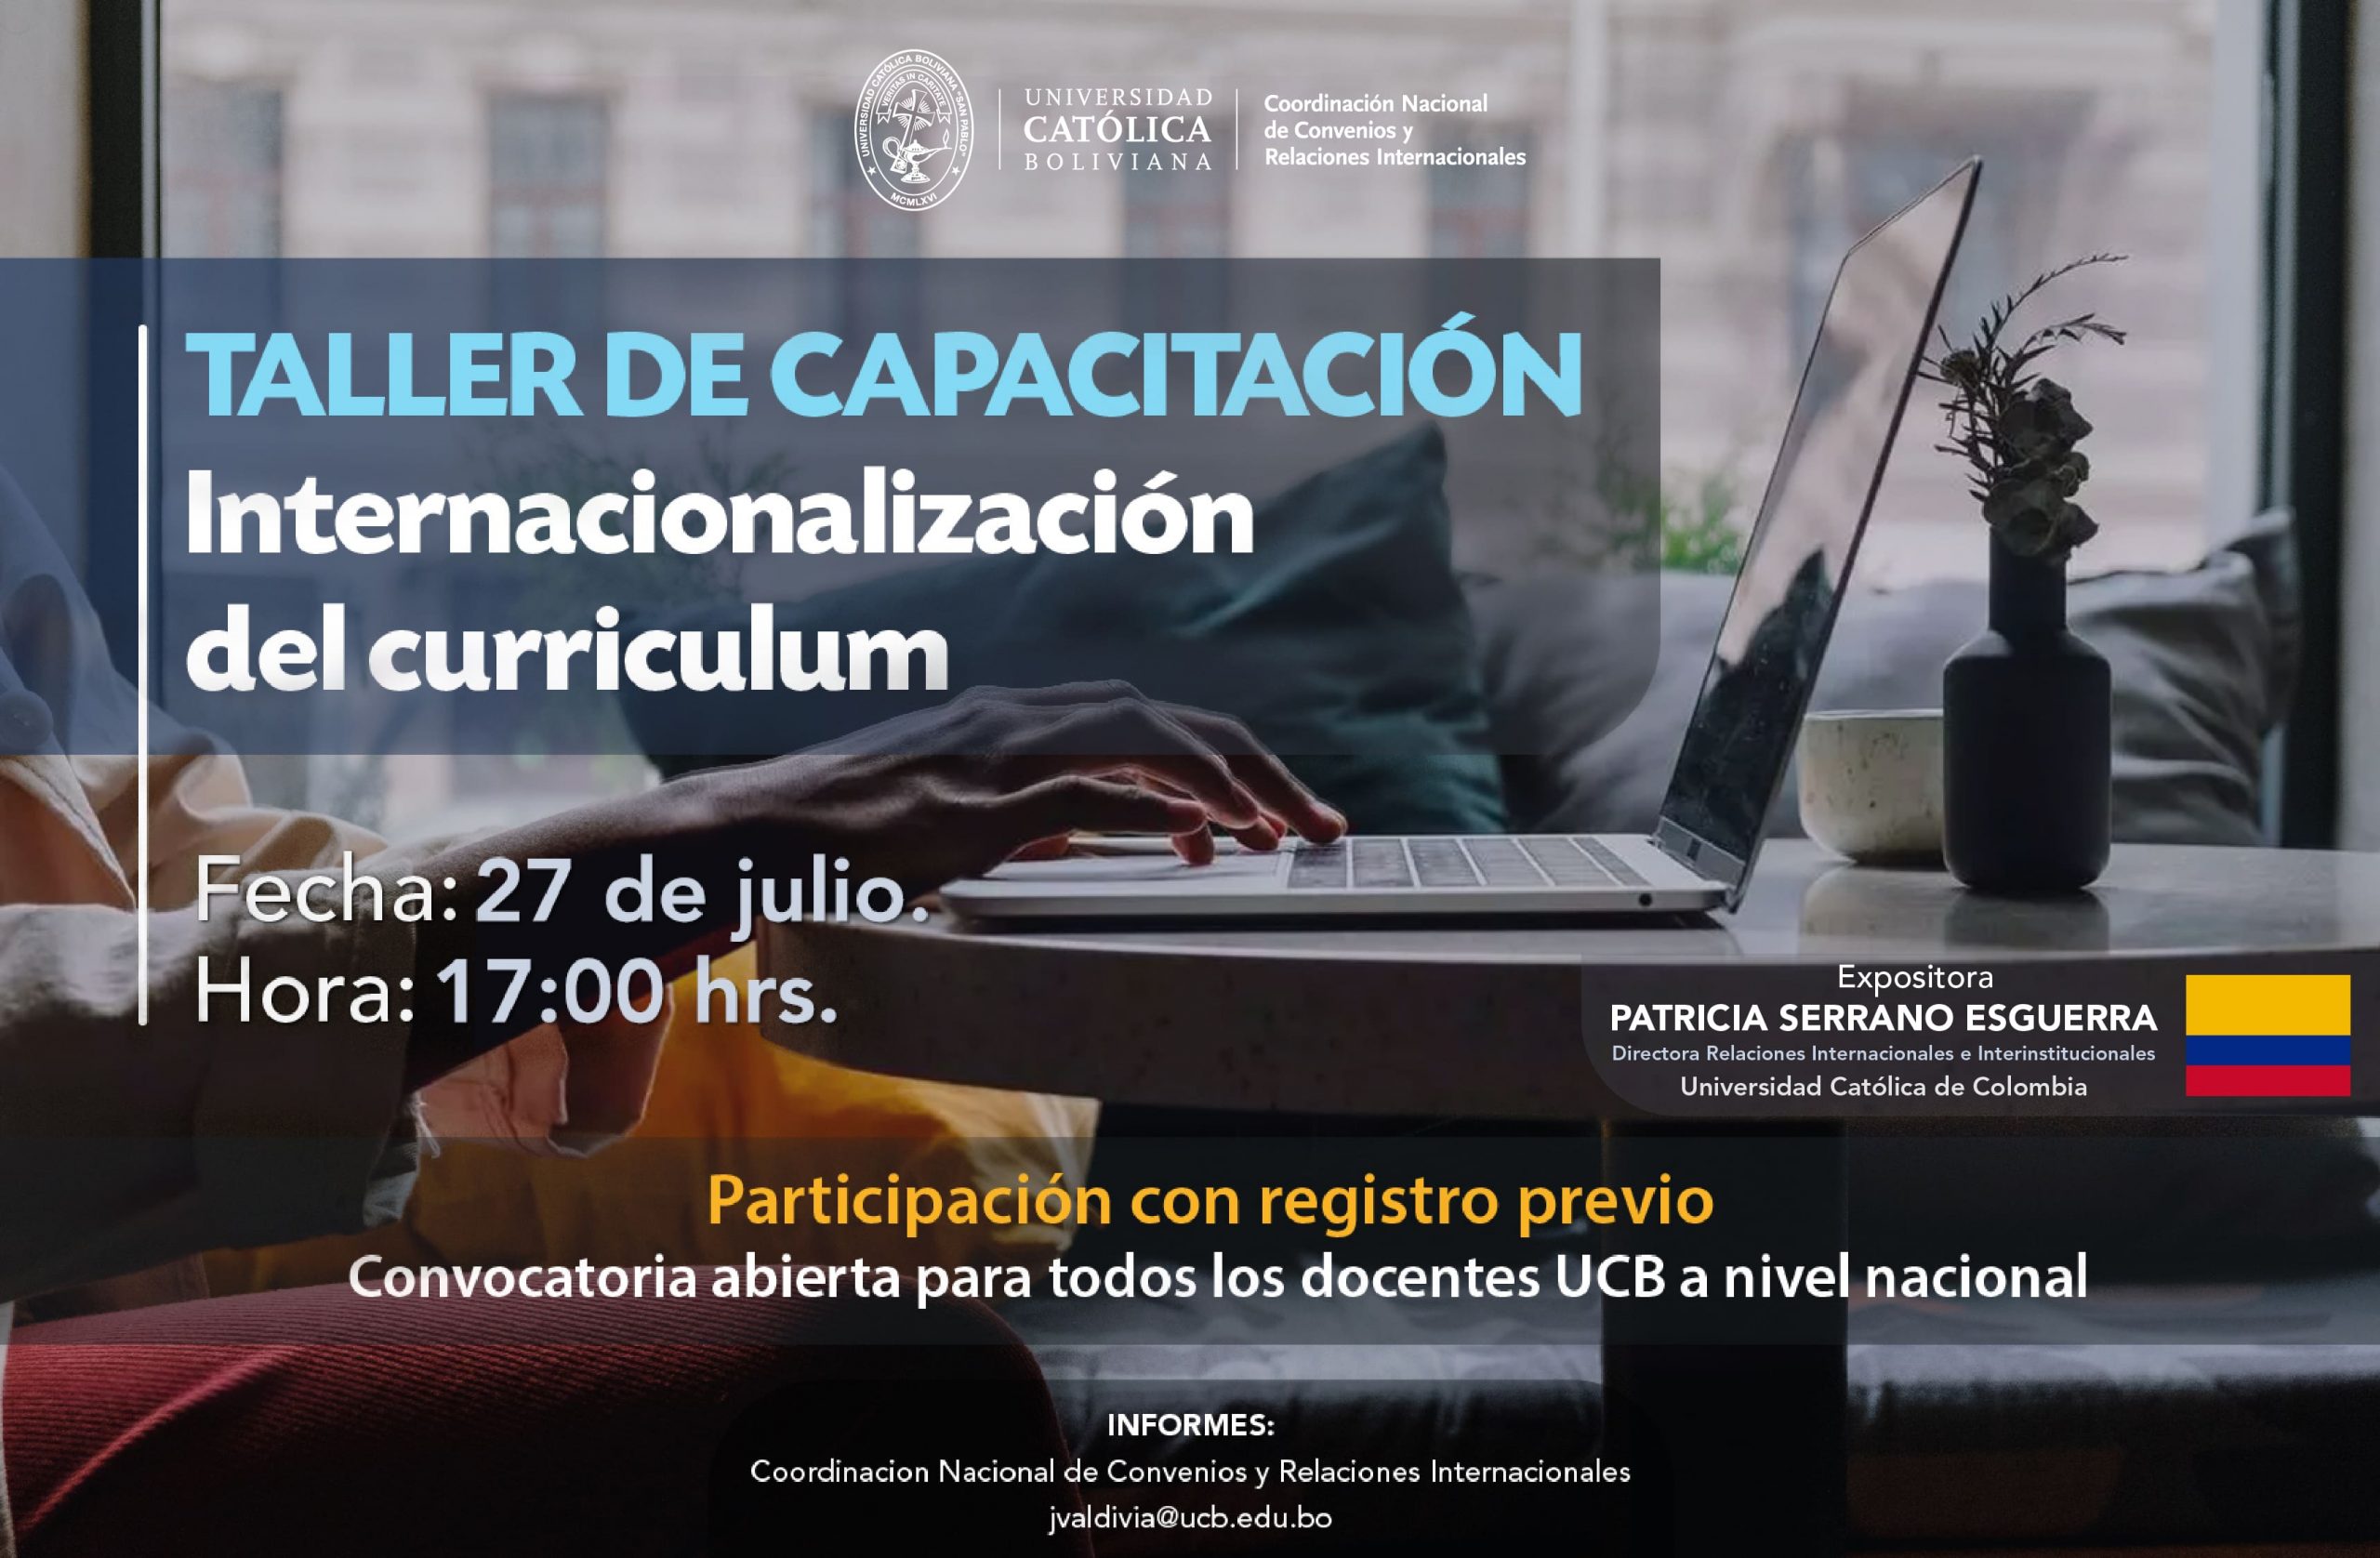 Invitación a docentes a nivel nacional de la UCB “Taller sobre Internacionalización del Currículum”